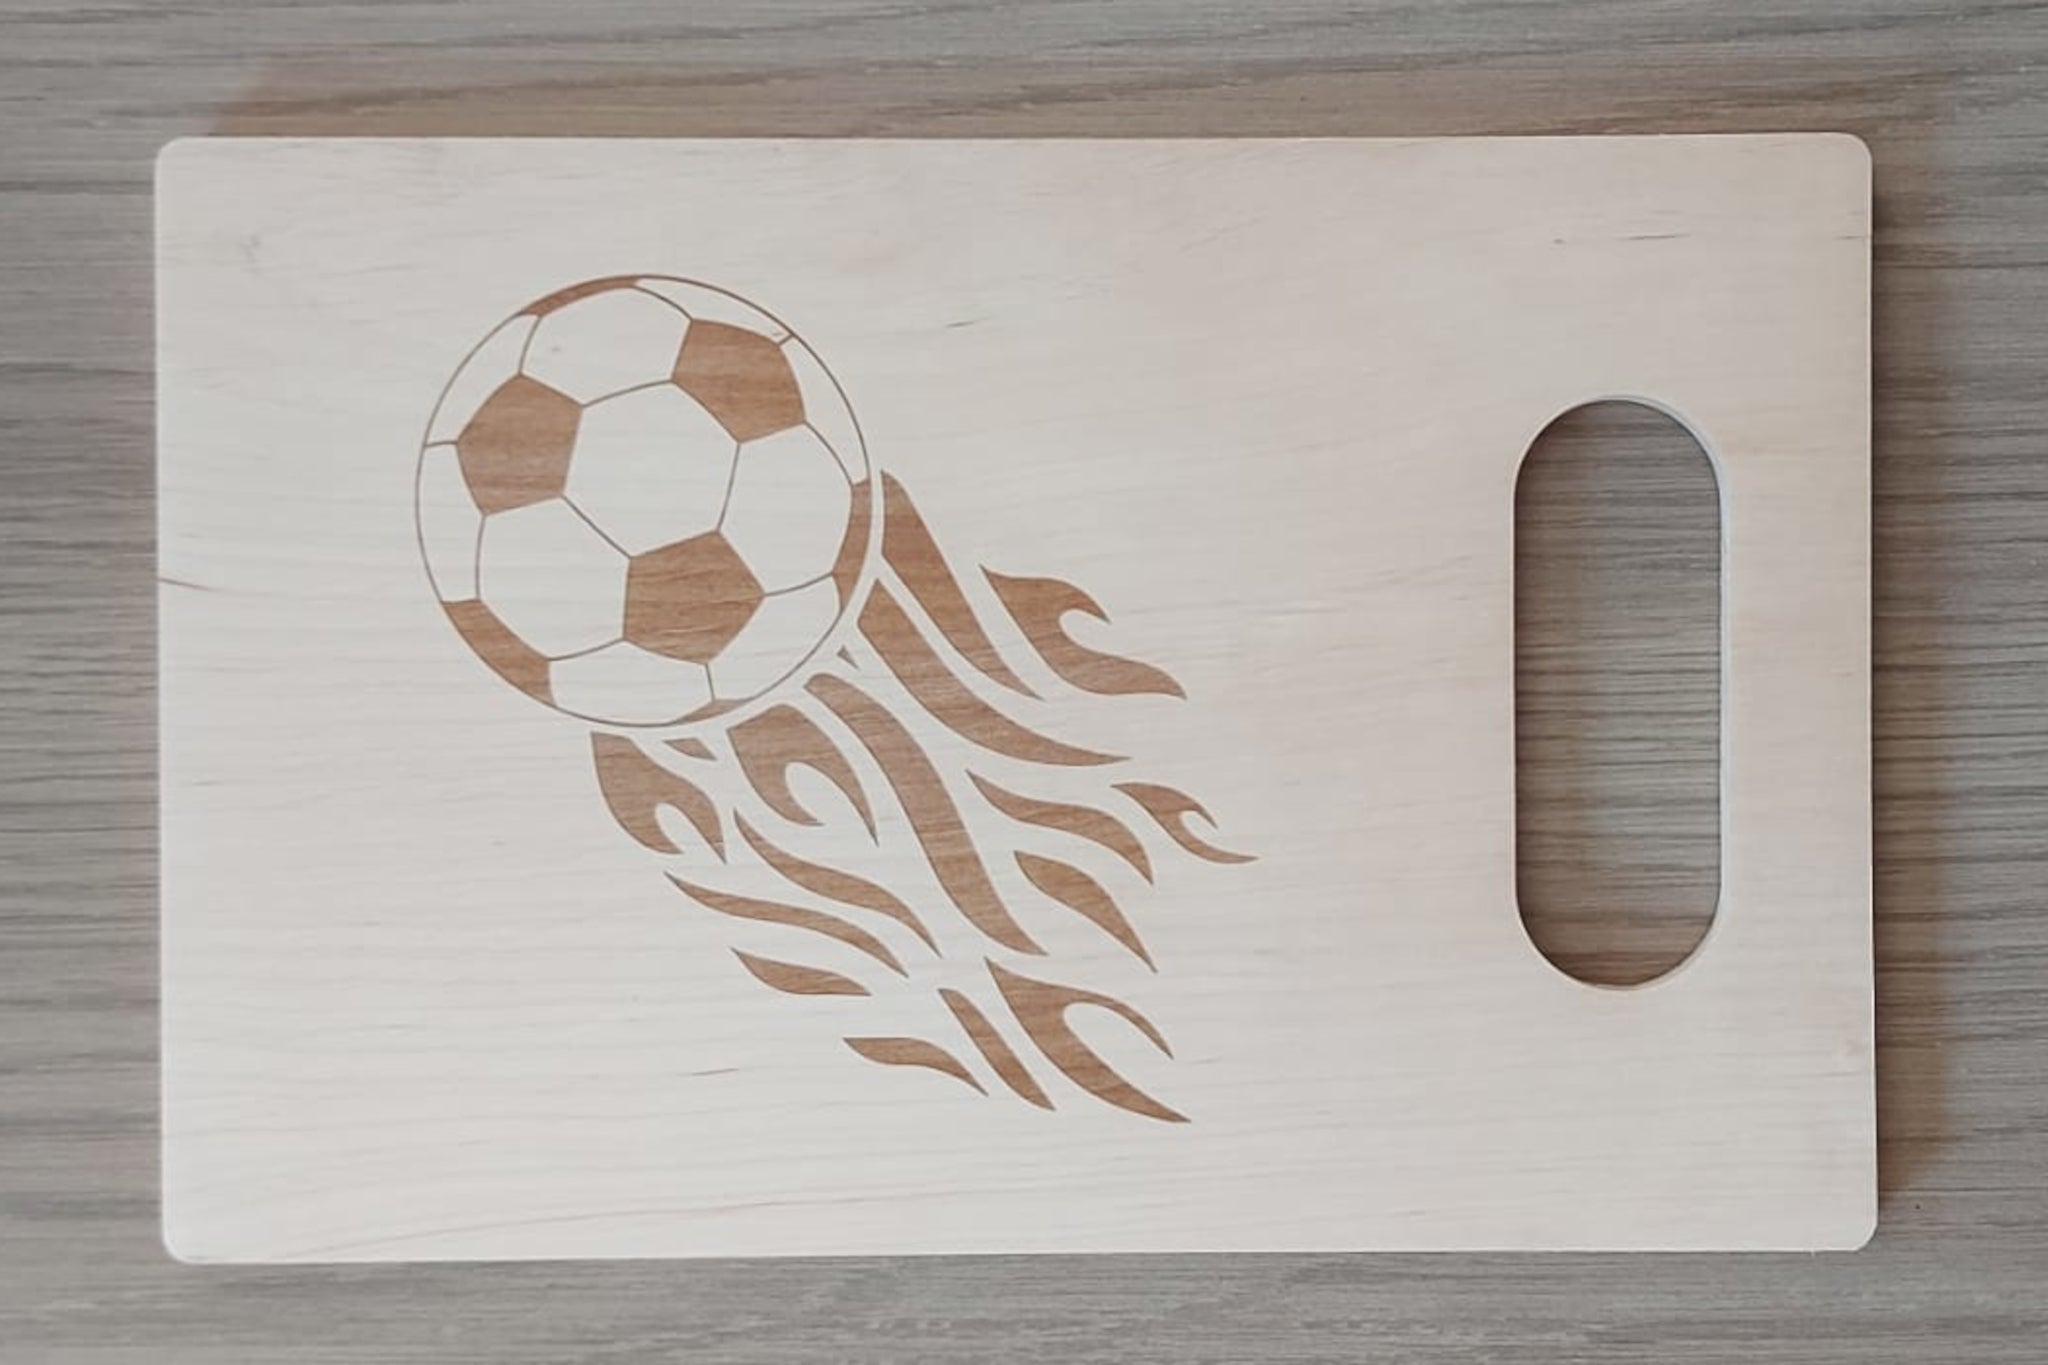 Houten tapasplank, snijplank, serveerplank rechthoek met handvat. Afgewerkt met mooie gravure van een voetbal. Cadeau voor een voetballer.